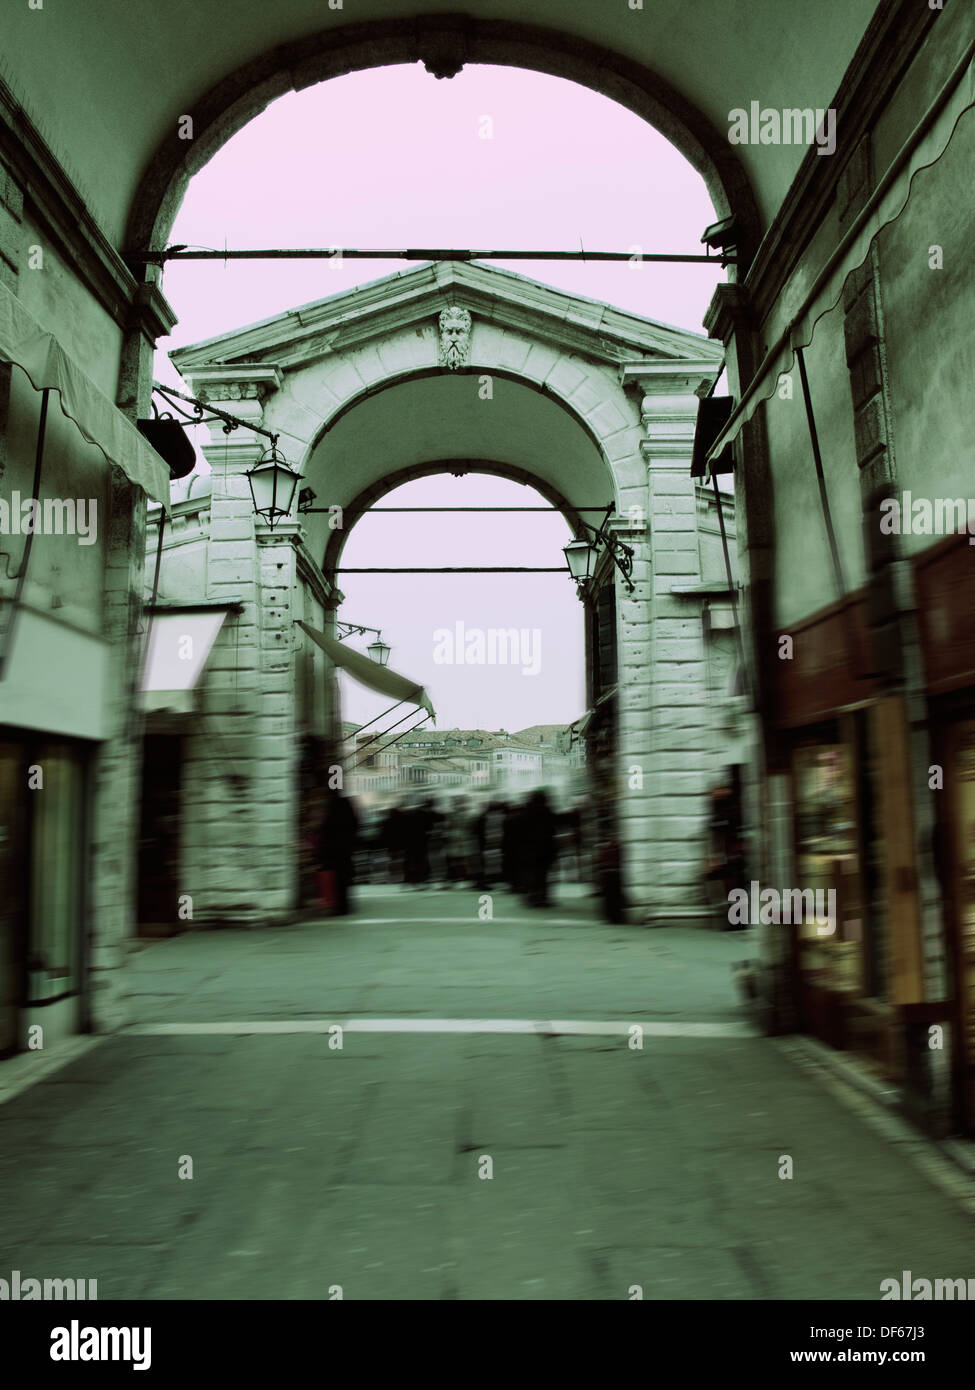 Architectural arches on the Rialto bridge, Venice, Italy Stock Photo